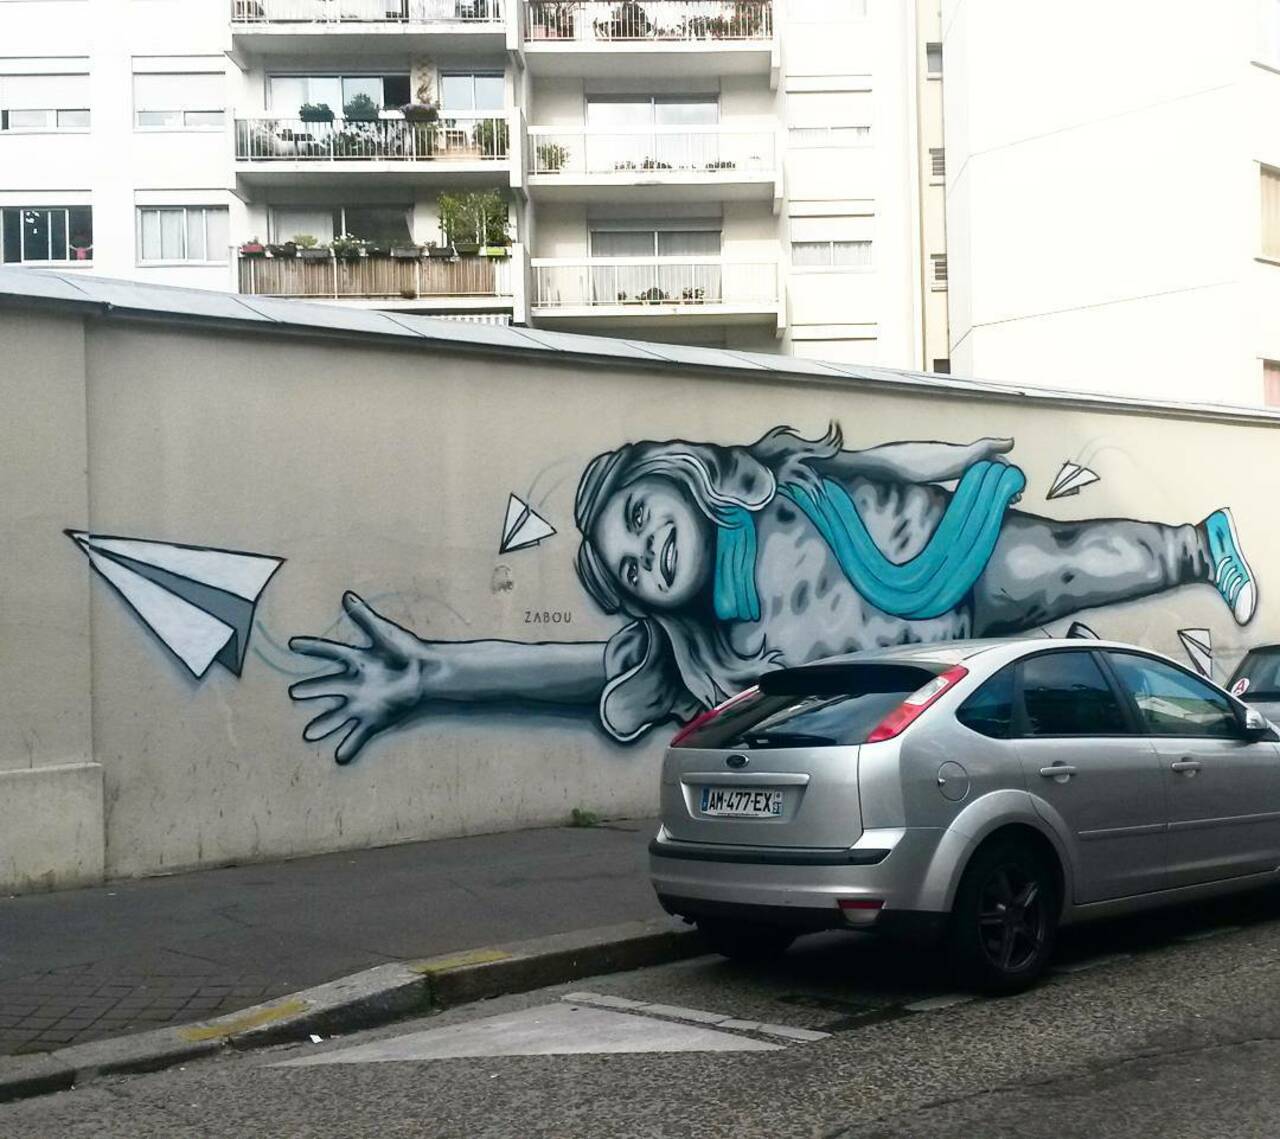 #Paris #graffiti photo by @princessepepett http://ift.tt/1N6kJdj #StreetArt http://t.co/R1iLjgx7UT